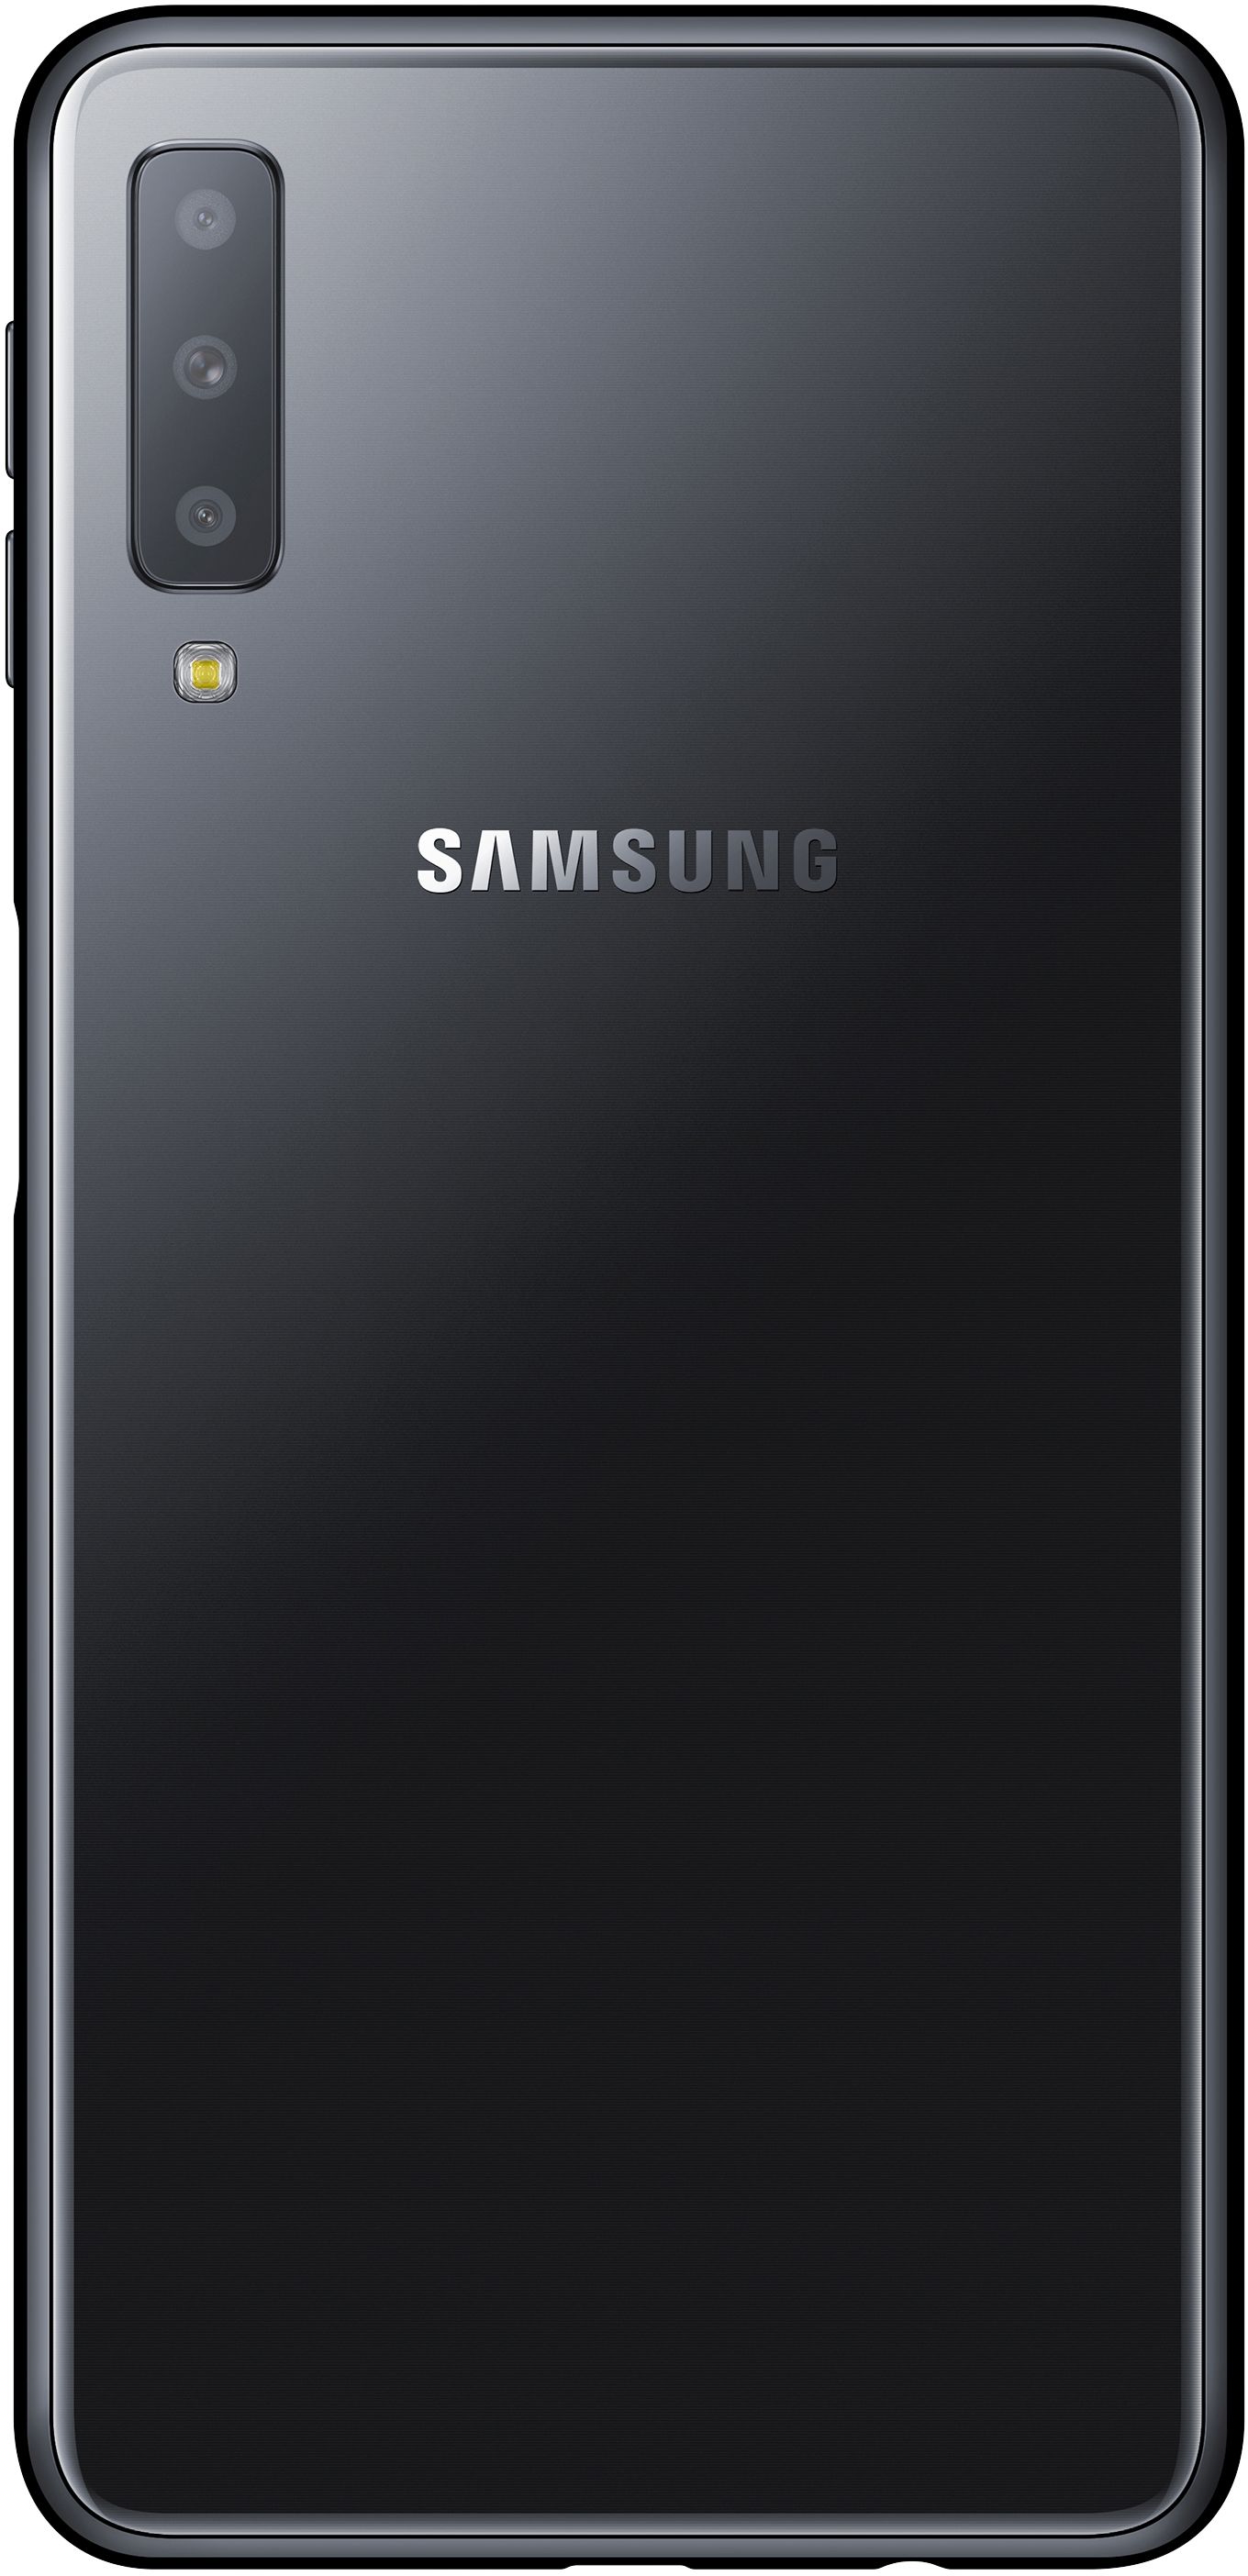 Samsung Galaxy A7 (2018) 64GB Black